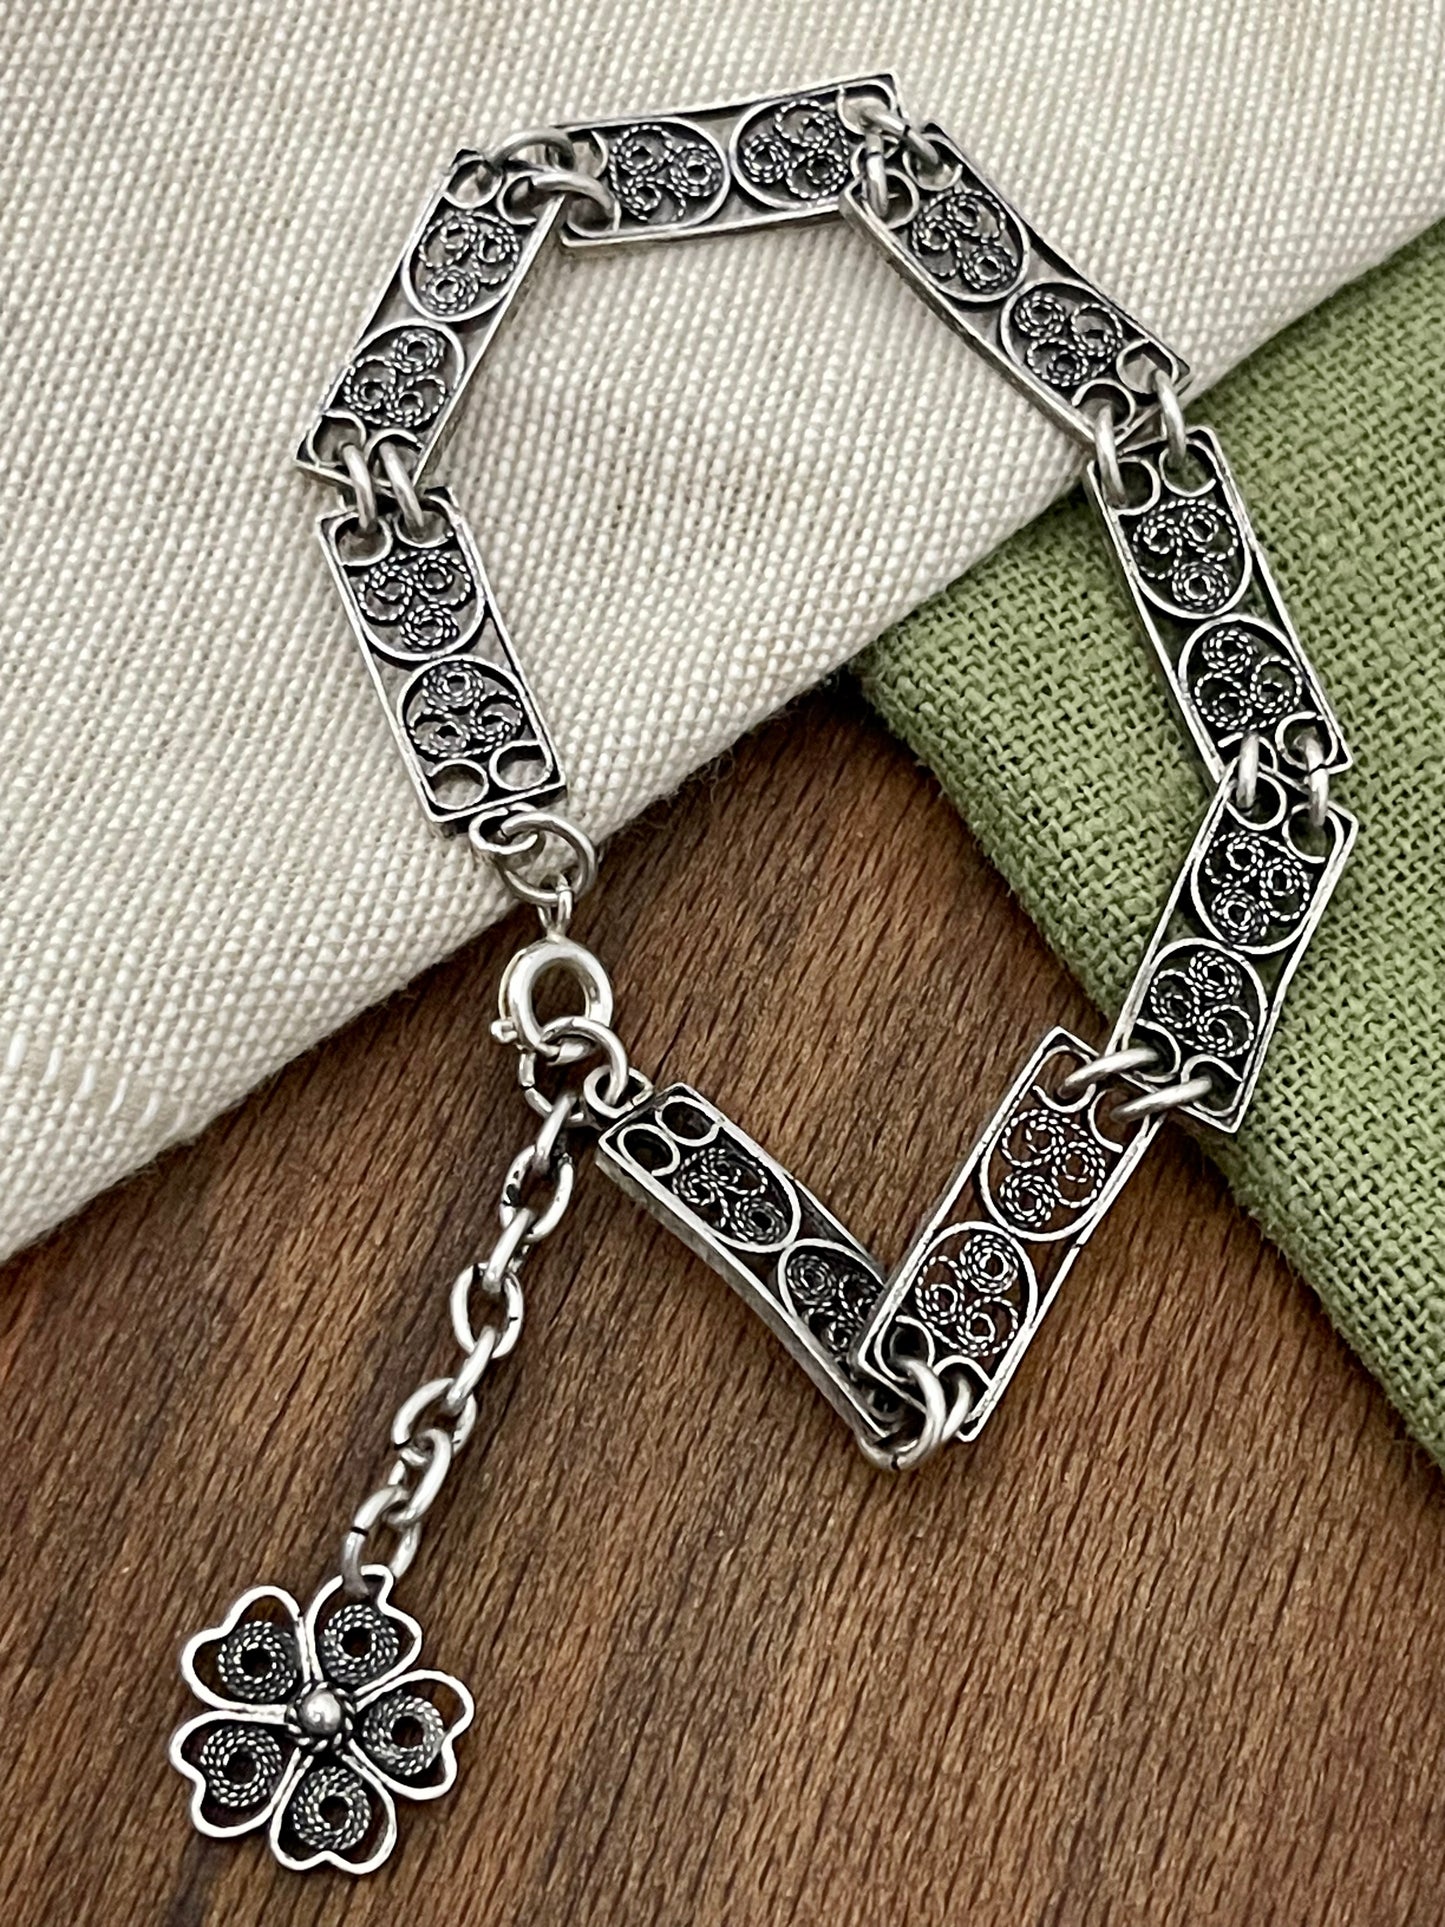 Lovely Indian Filigree Link Solid Sterling 925 Silver Bracelet Vintage Jewelry